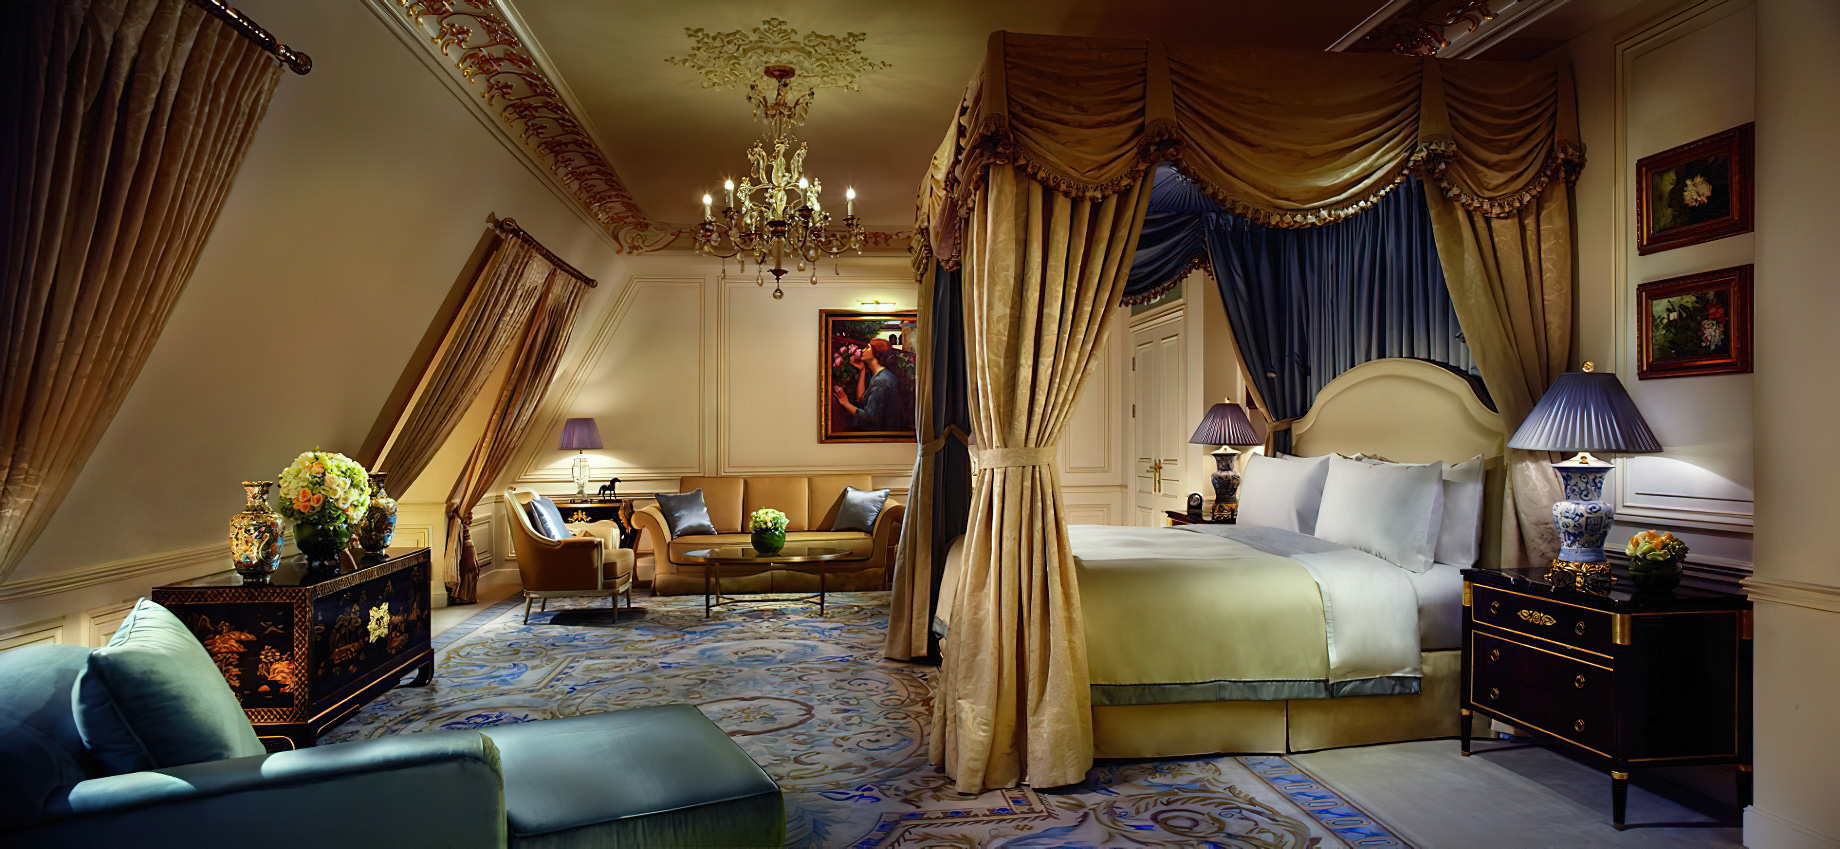 The Ritz-Carlton, Tianjin Hotel – Tianjin, China – The Ritz-Carlton Suite Bedroom